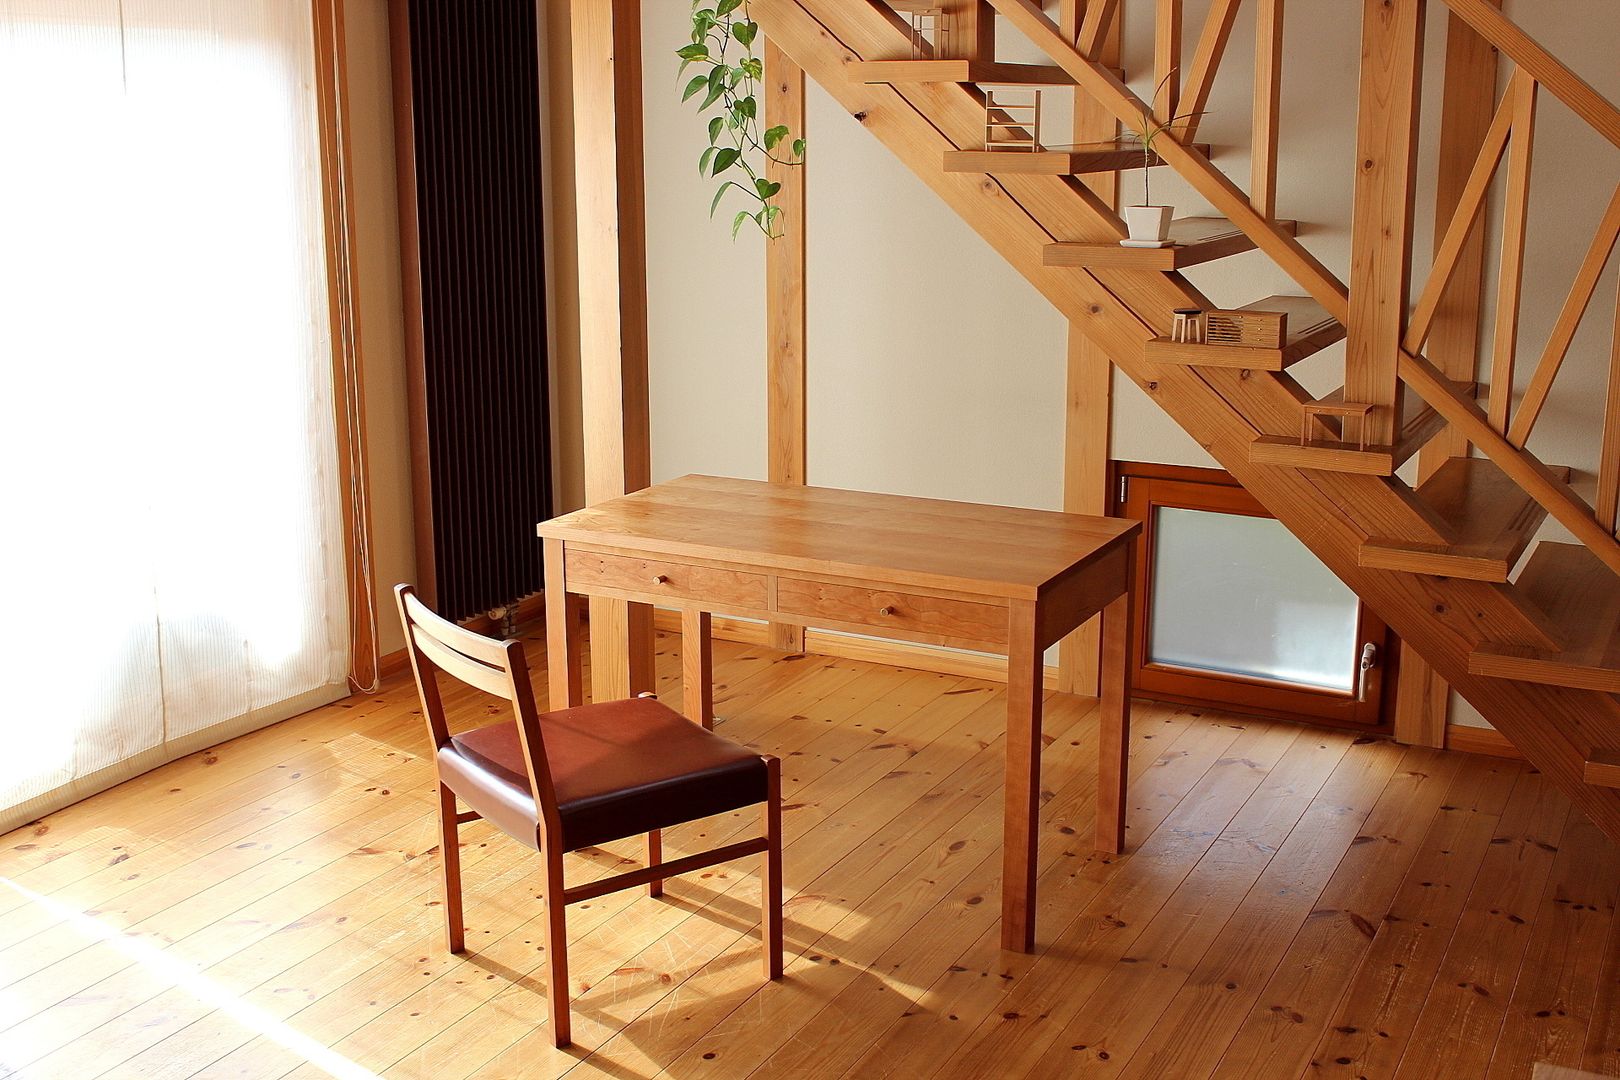 Table, desk, trusty wood works trusty wood works Eklektyczny pokój dziecięcy Biurka i krzesła